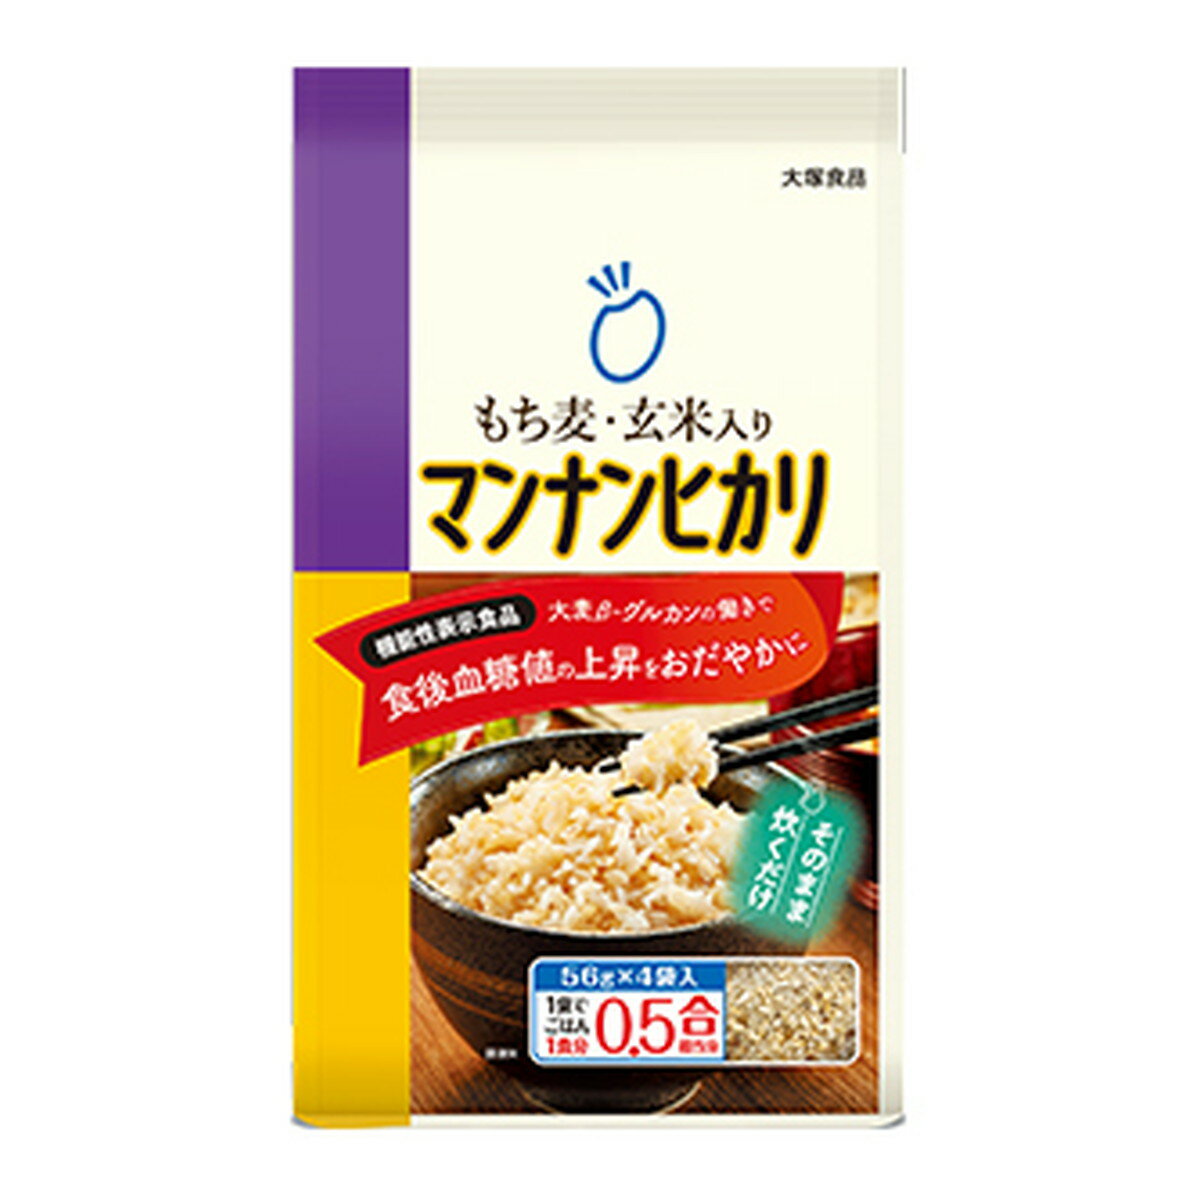 【サマーセール】大塚食品 もち麦玄米入り マンナンヒカリ 56g×4袋入